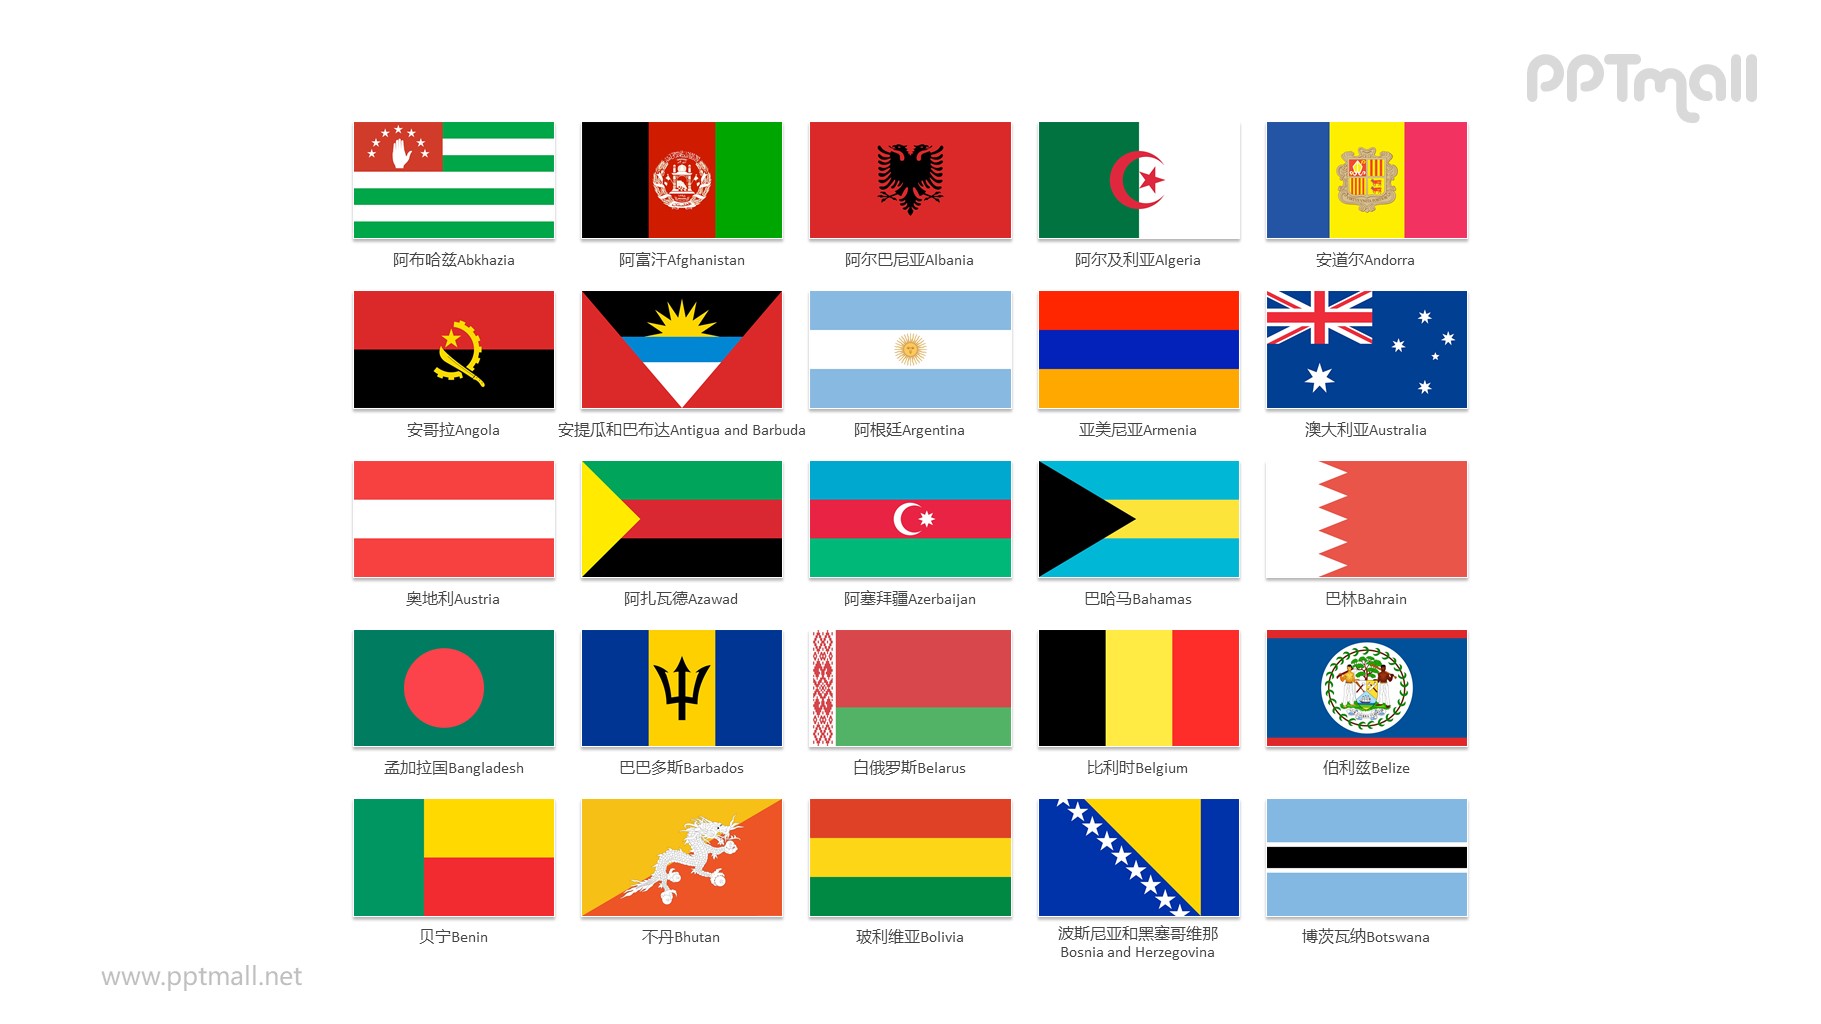 世界各国国旗/国家按字母A-B排序的国旗图片PPT素材集合下载